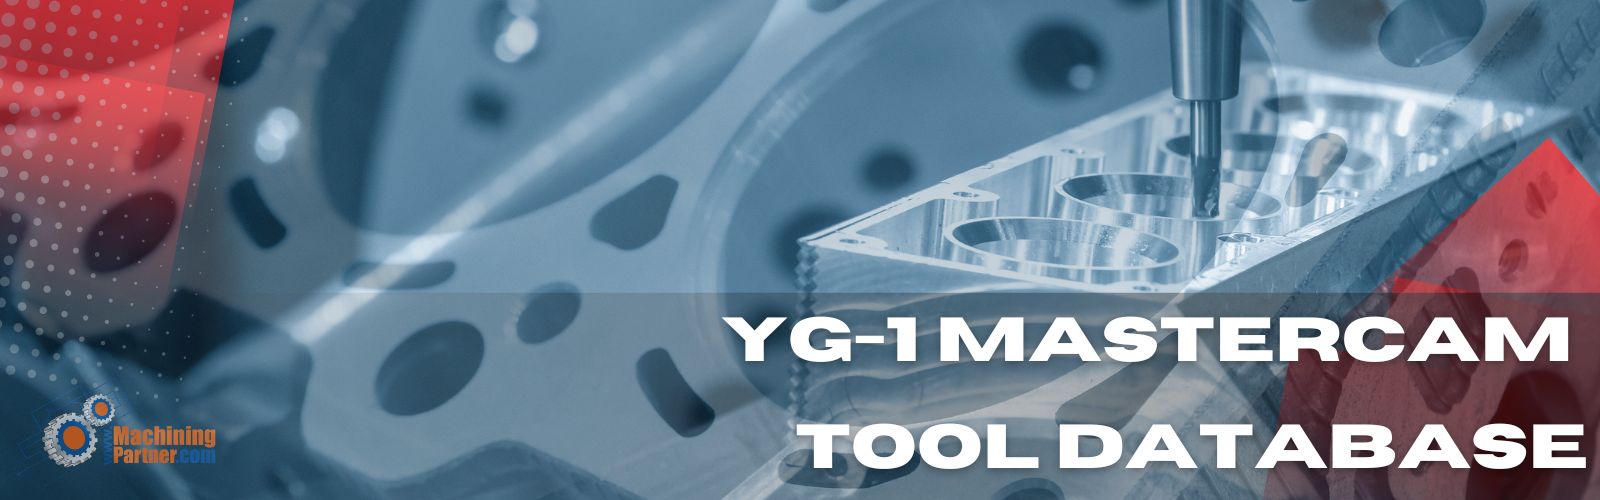 YG-1-Mastercam-Tooldatabase